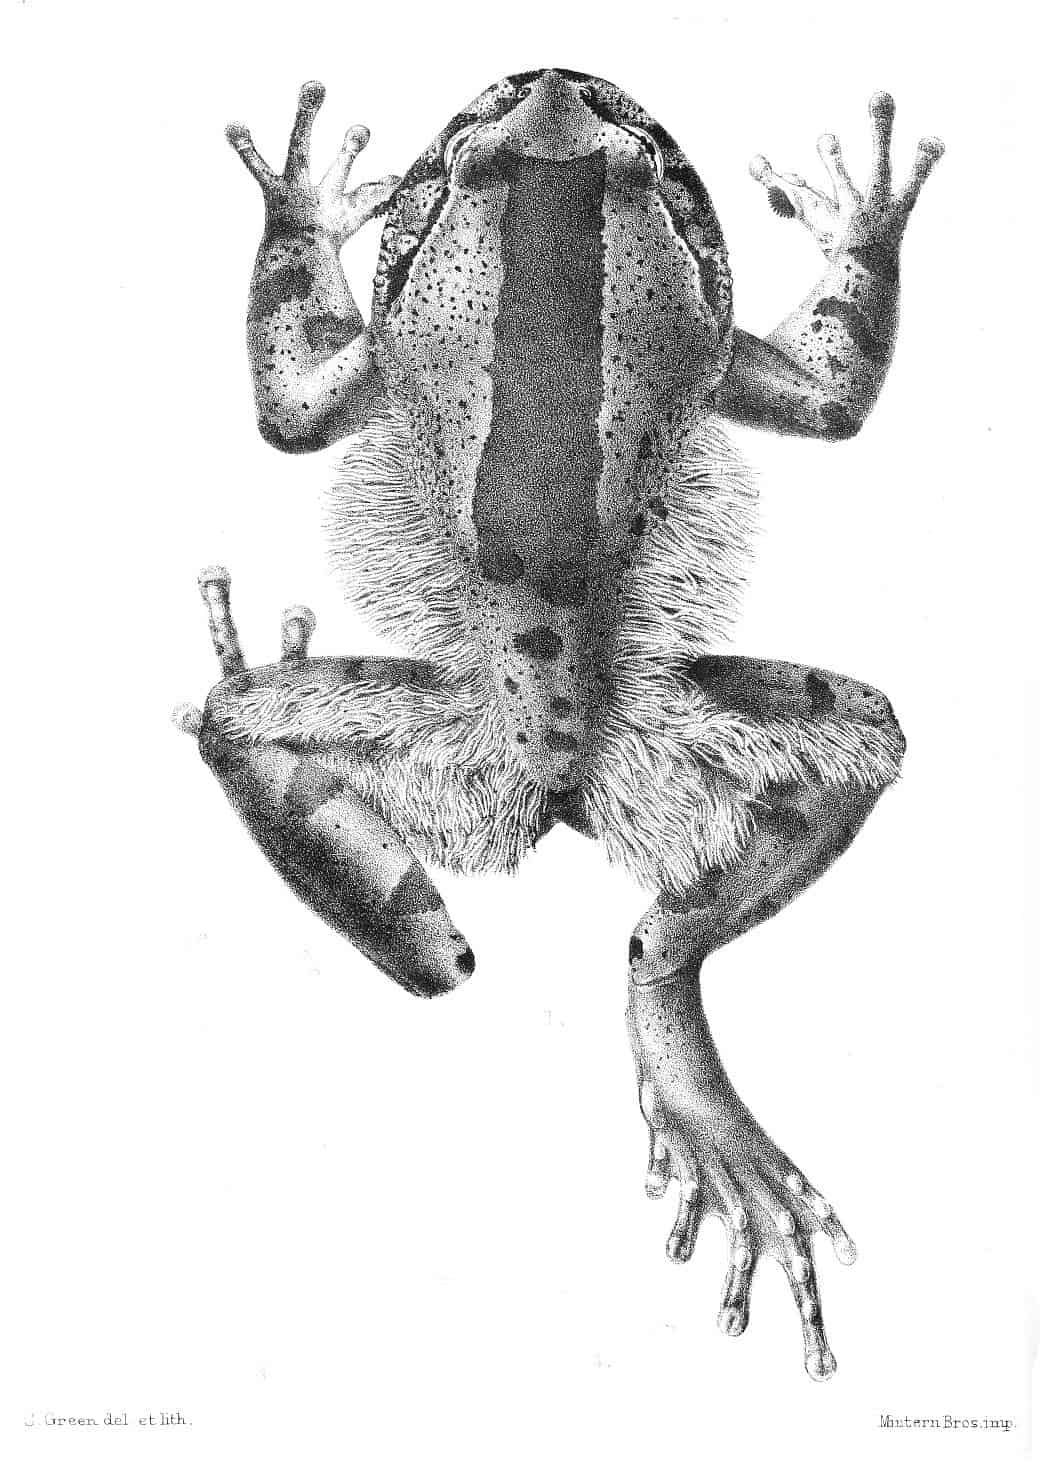 Trichobatrachus robustus